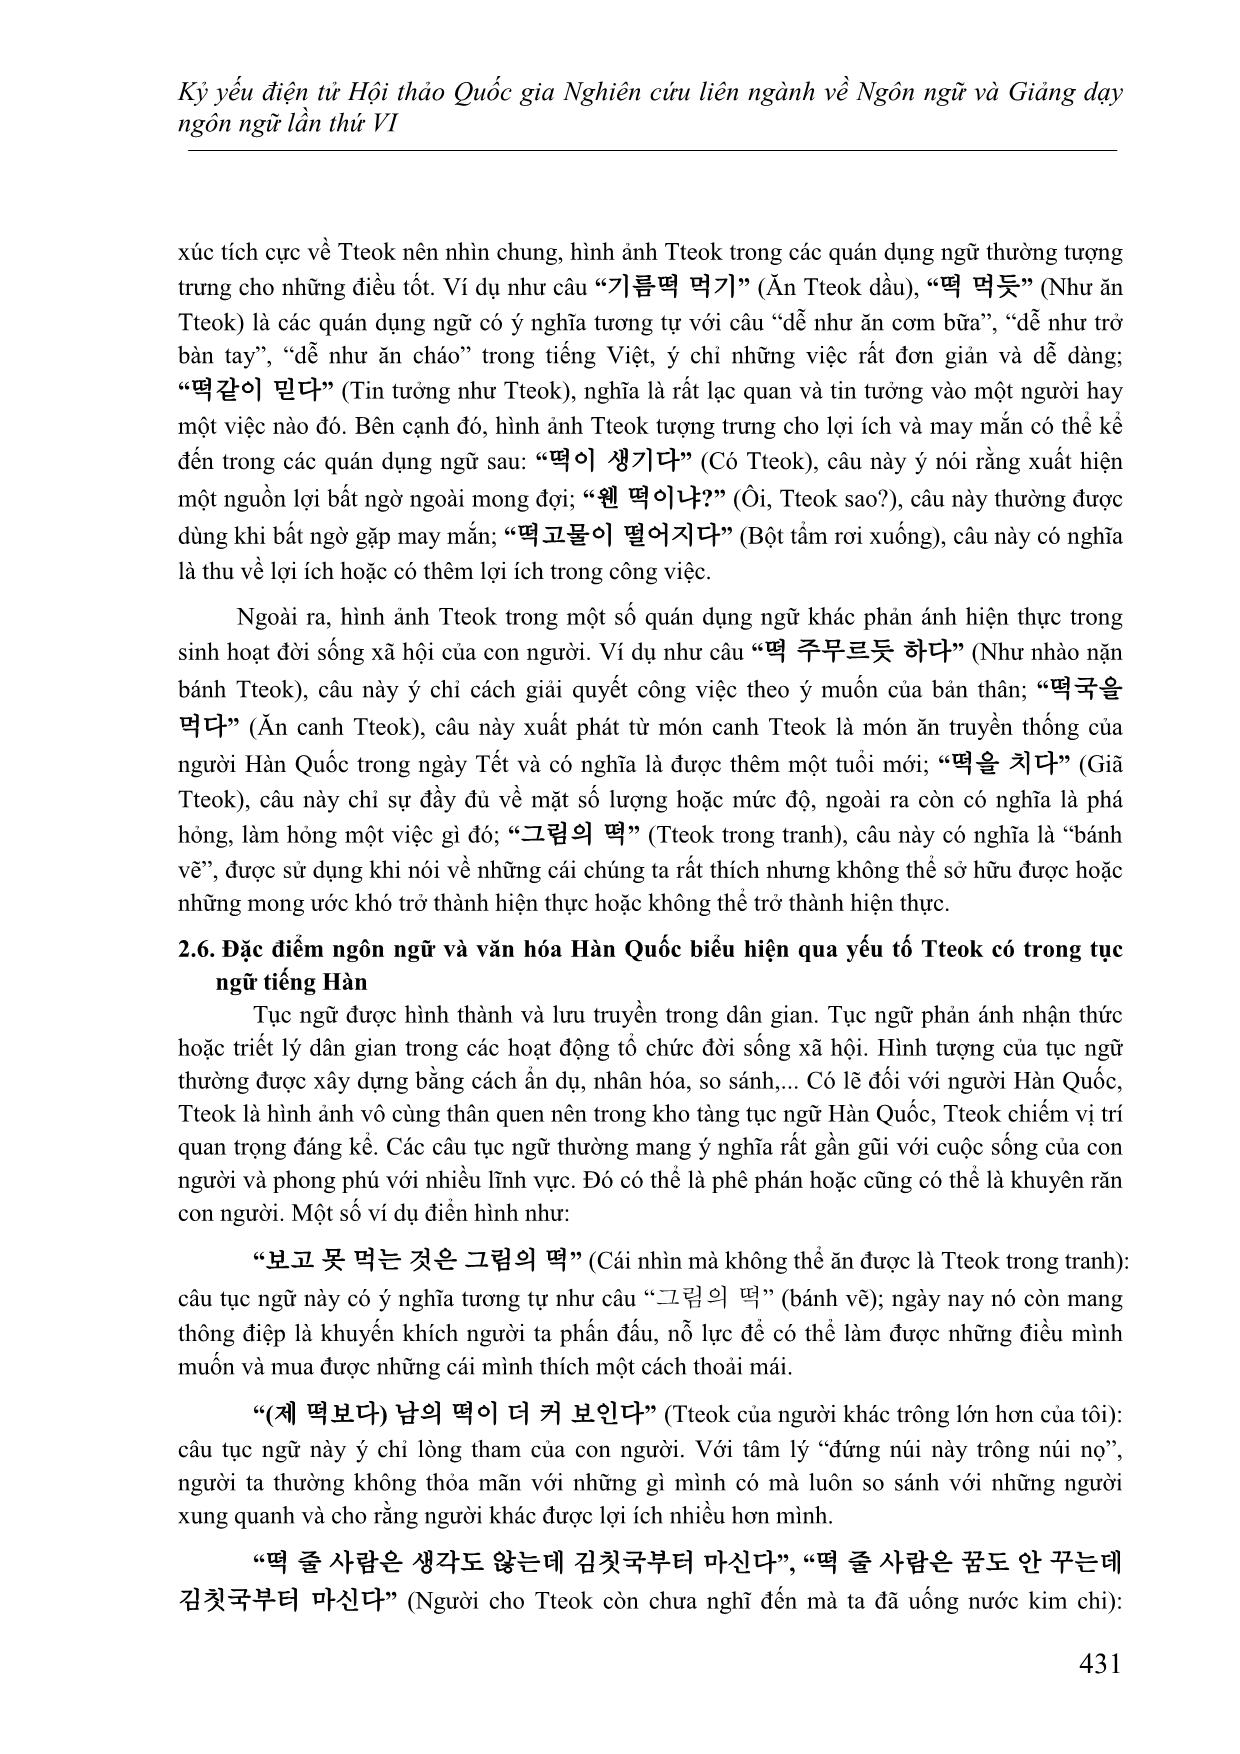 Đặc điểm ngôn ngữ và văn hóa Hàn Quốc được biểu hiện qua yếu tố “tteok” trong quán dụng ngữ và tục ngữ tiếng Hàn trang 6